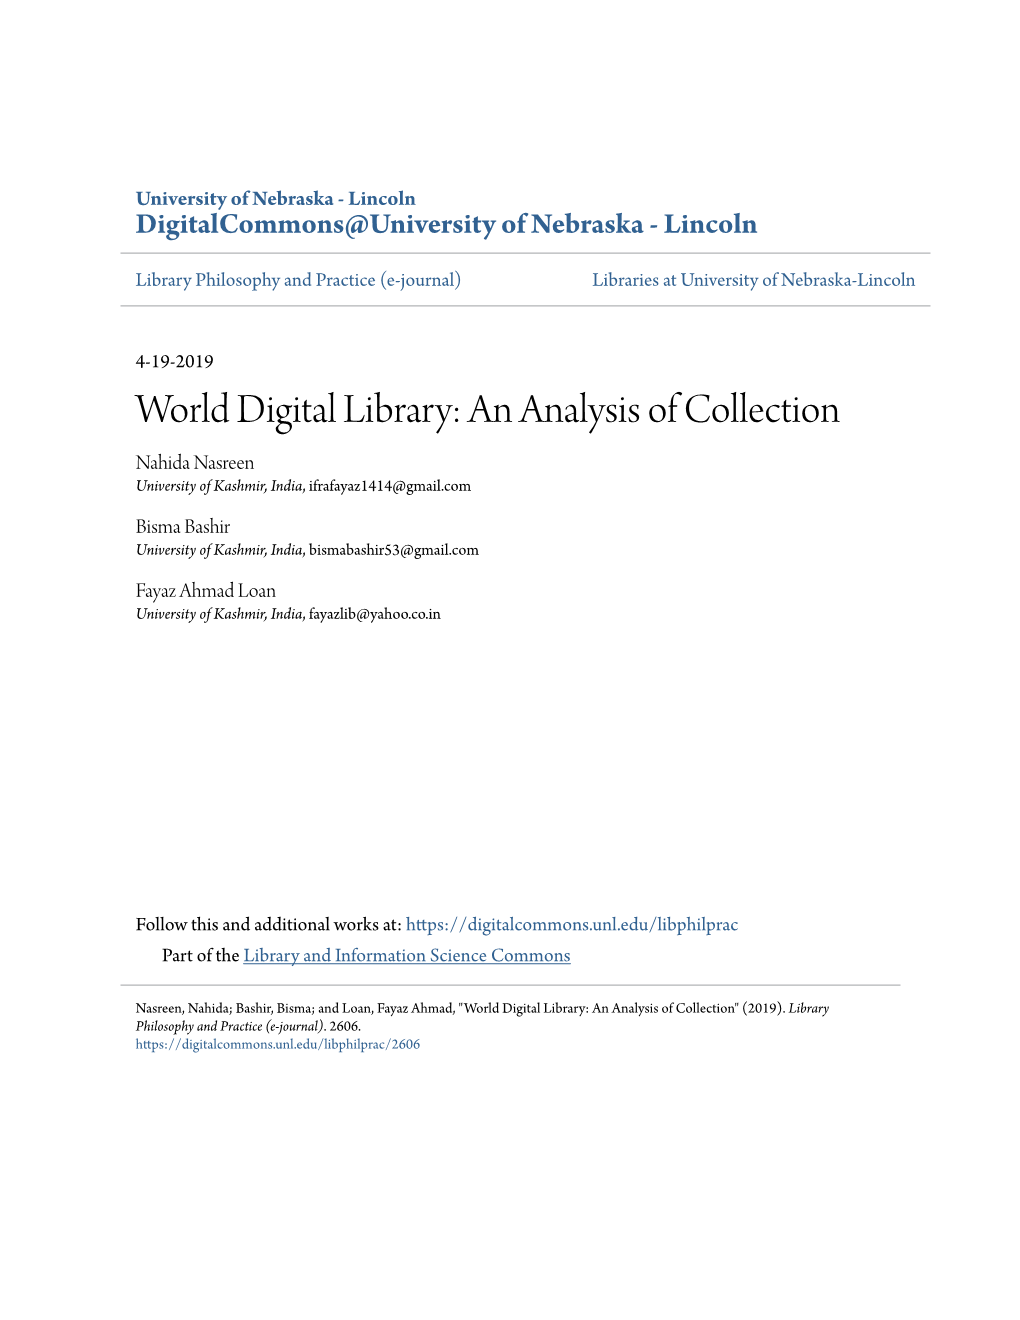 World Digital Library: an Analysis of Collection Nahida Nasreen University of Kashmir, India, Ifrafayaz1414@Gmail.Com